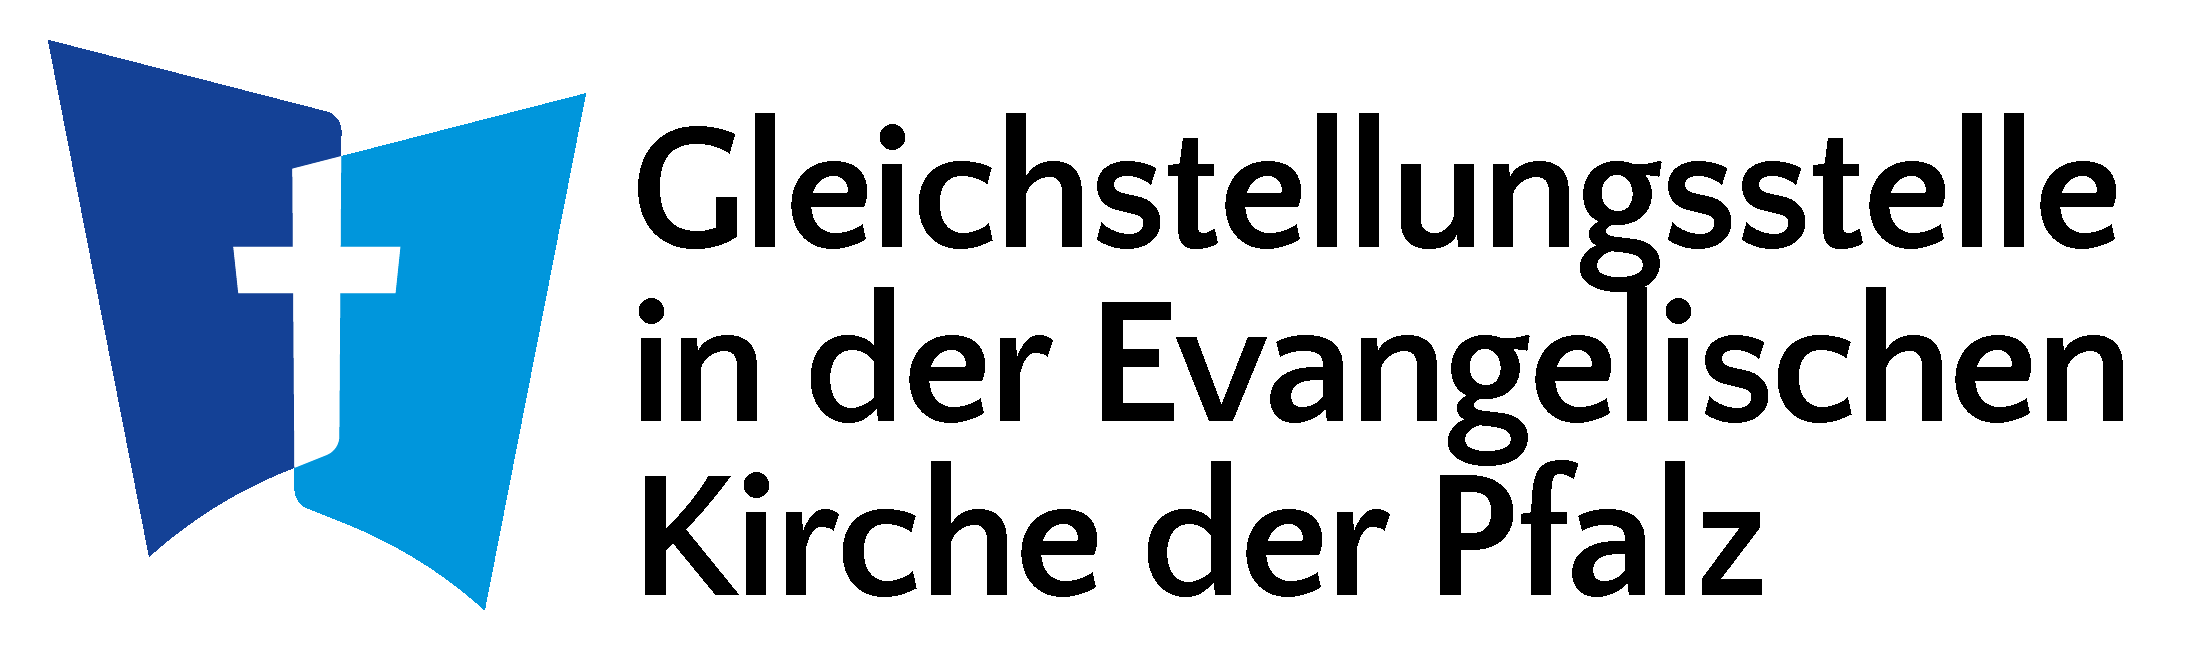 Logo der Gleichtsellungsstelle - Link zur Startseite